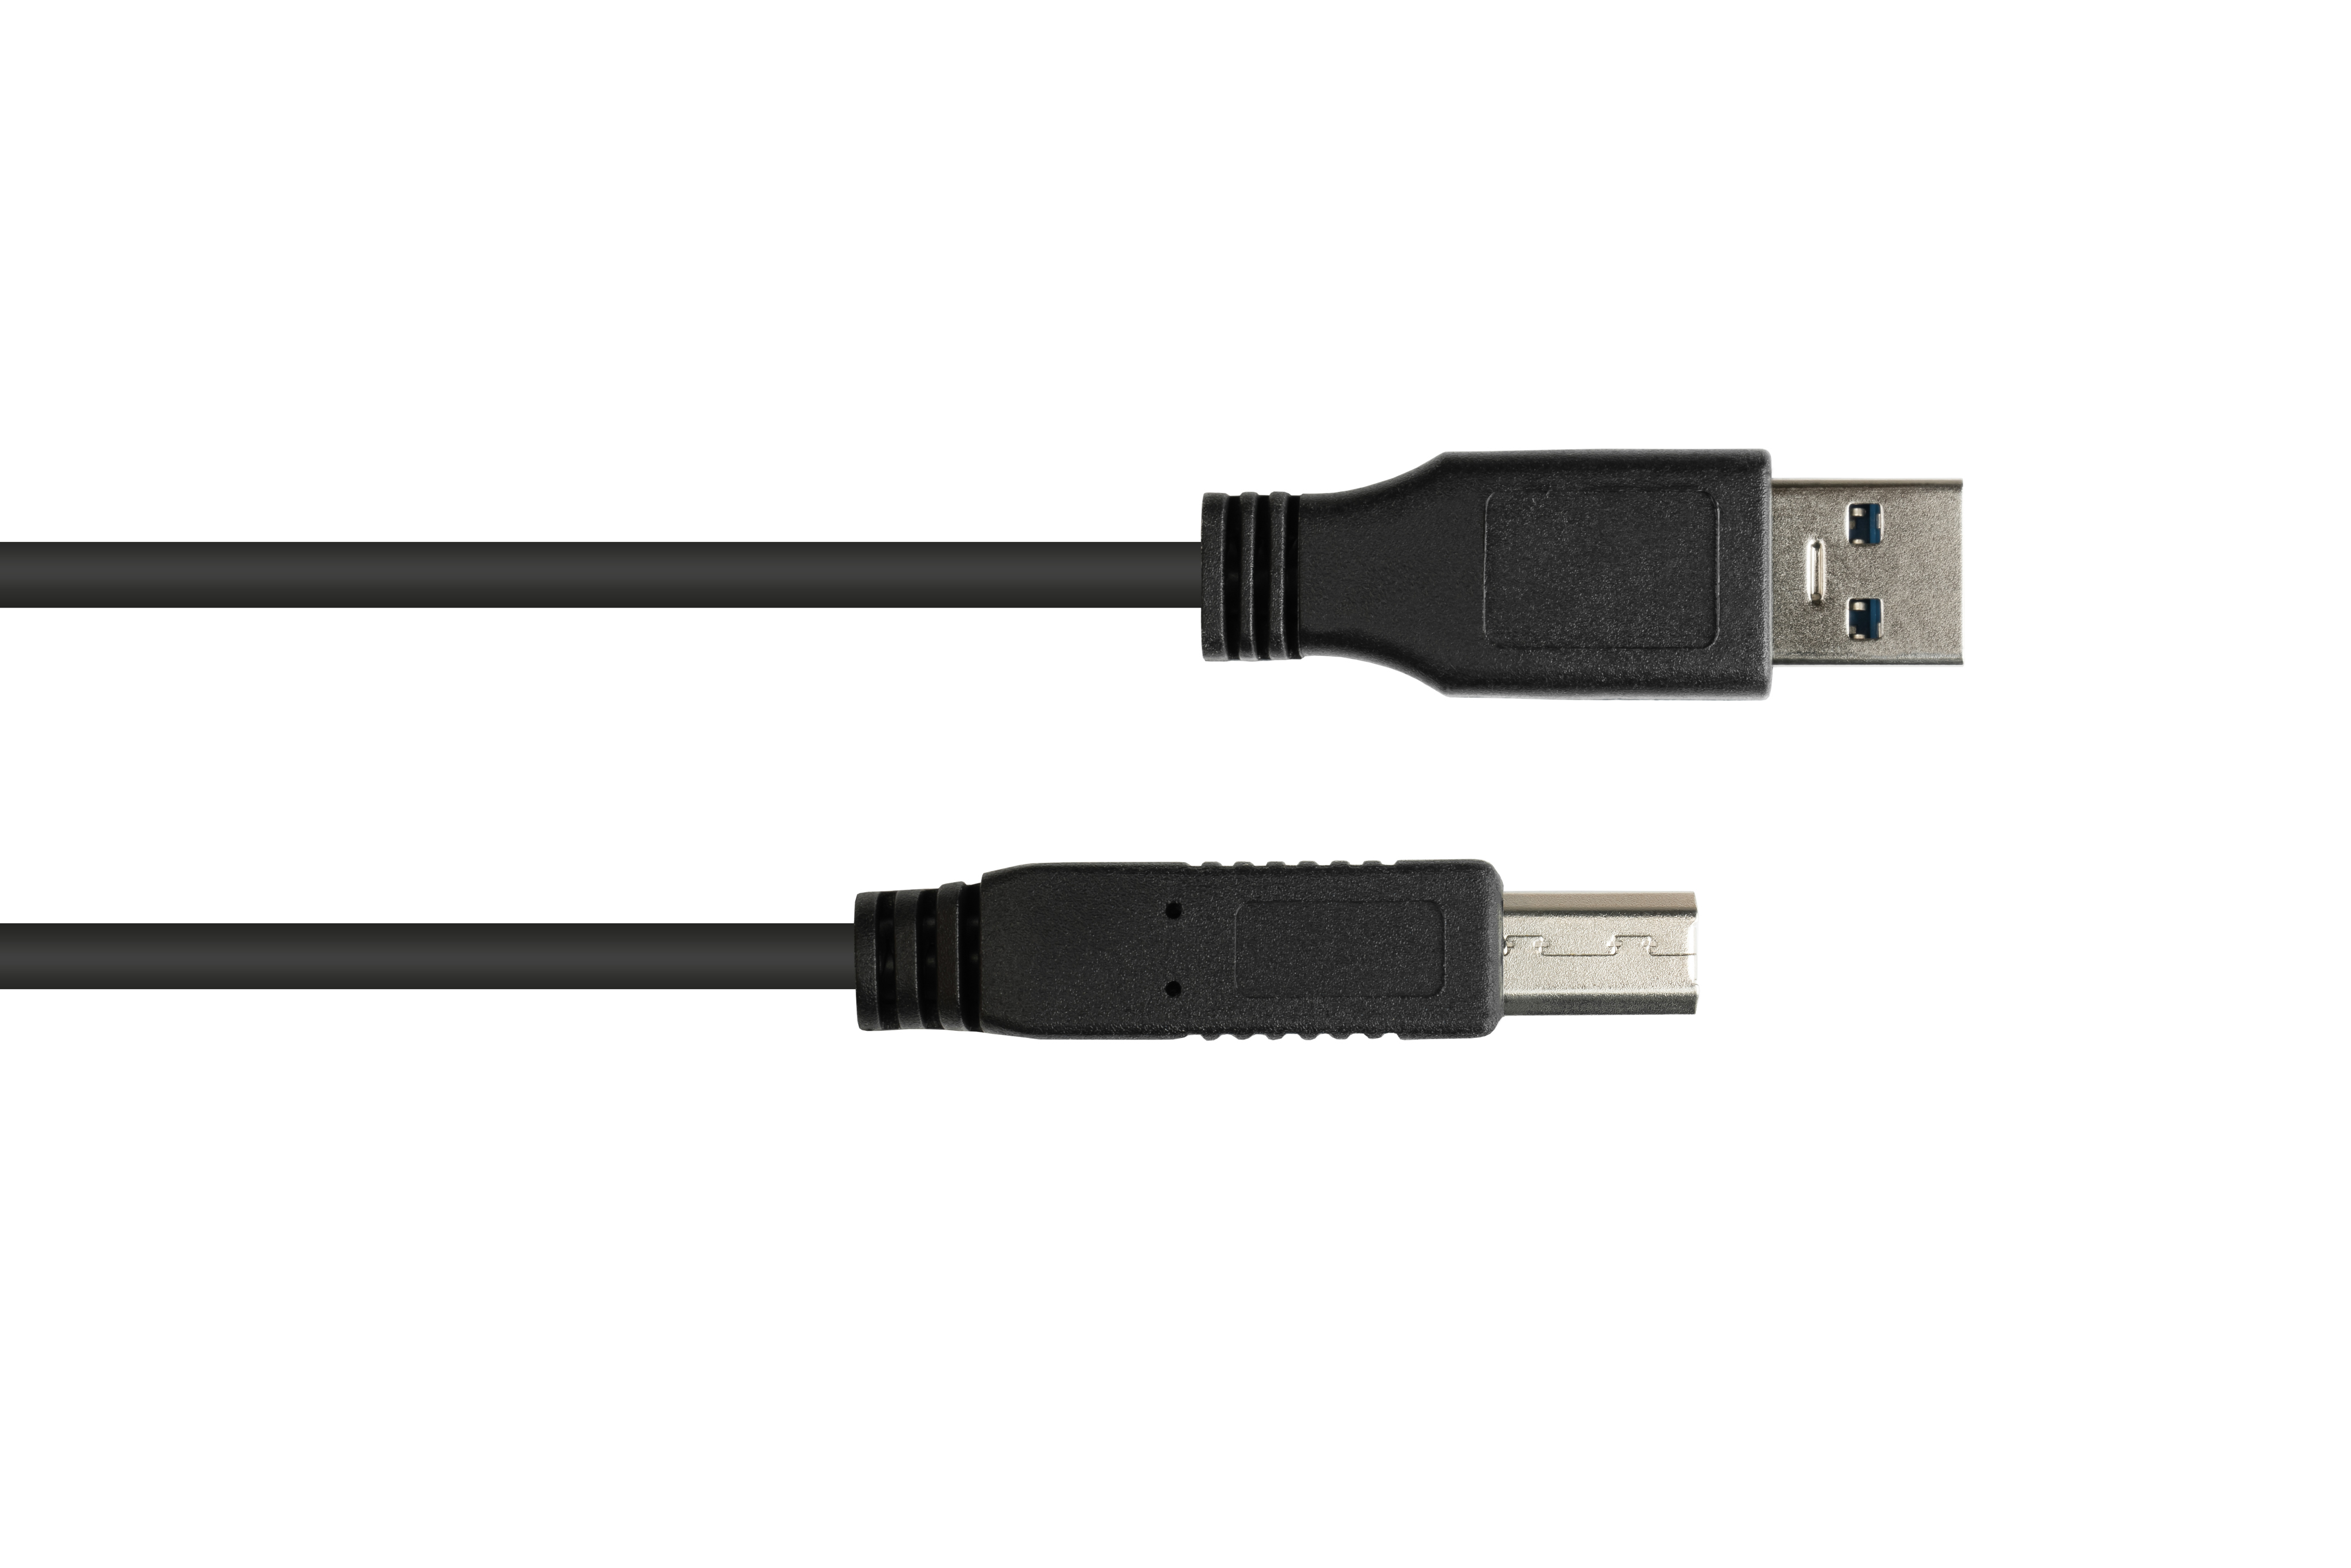 USB A 3.0 Stecker CONNECTIONS GOOD Stecker Anschlusskabel an schwarz B,